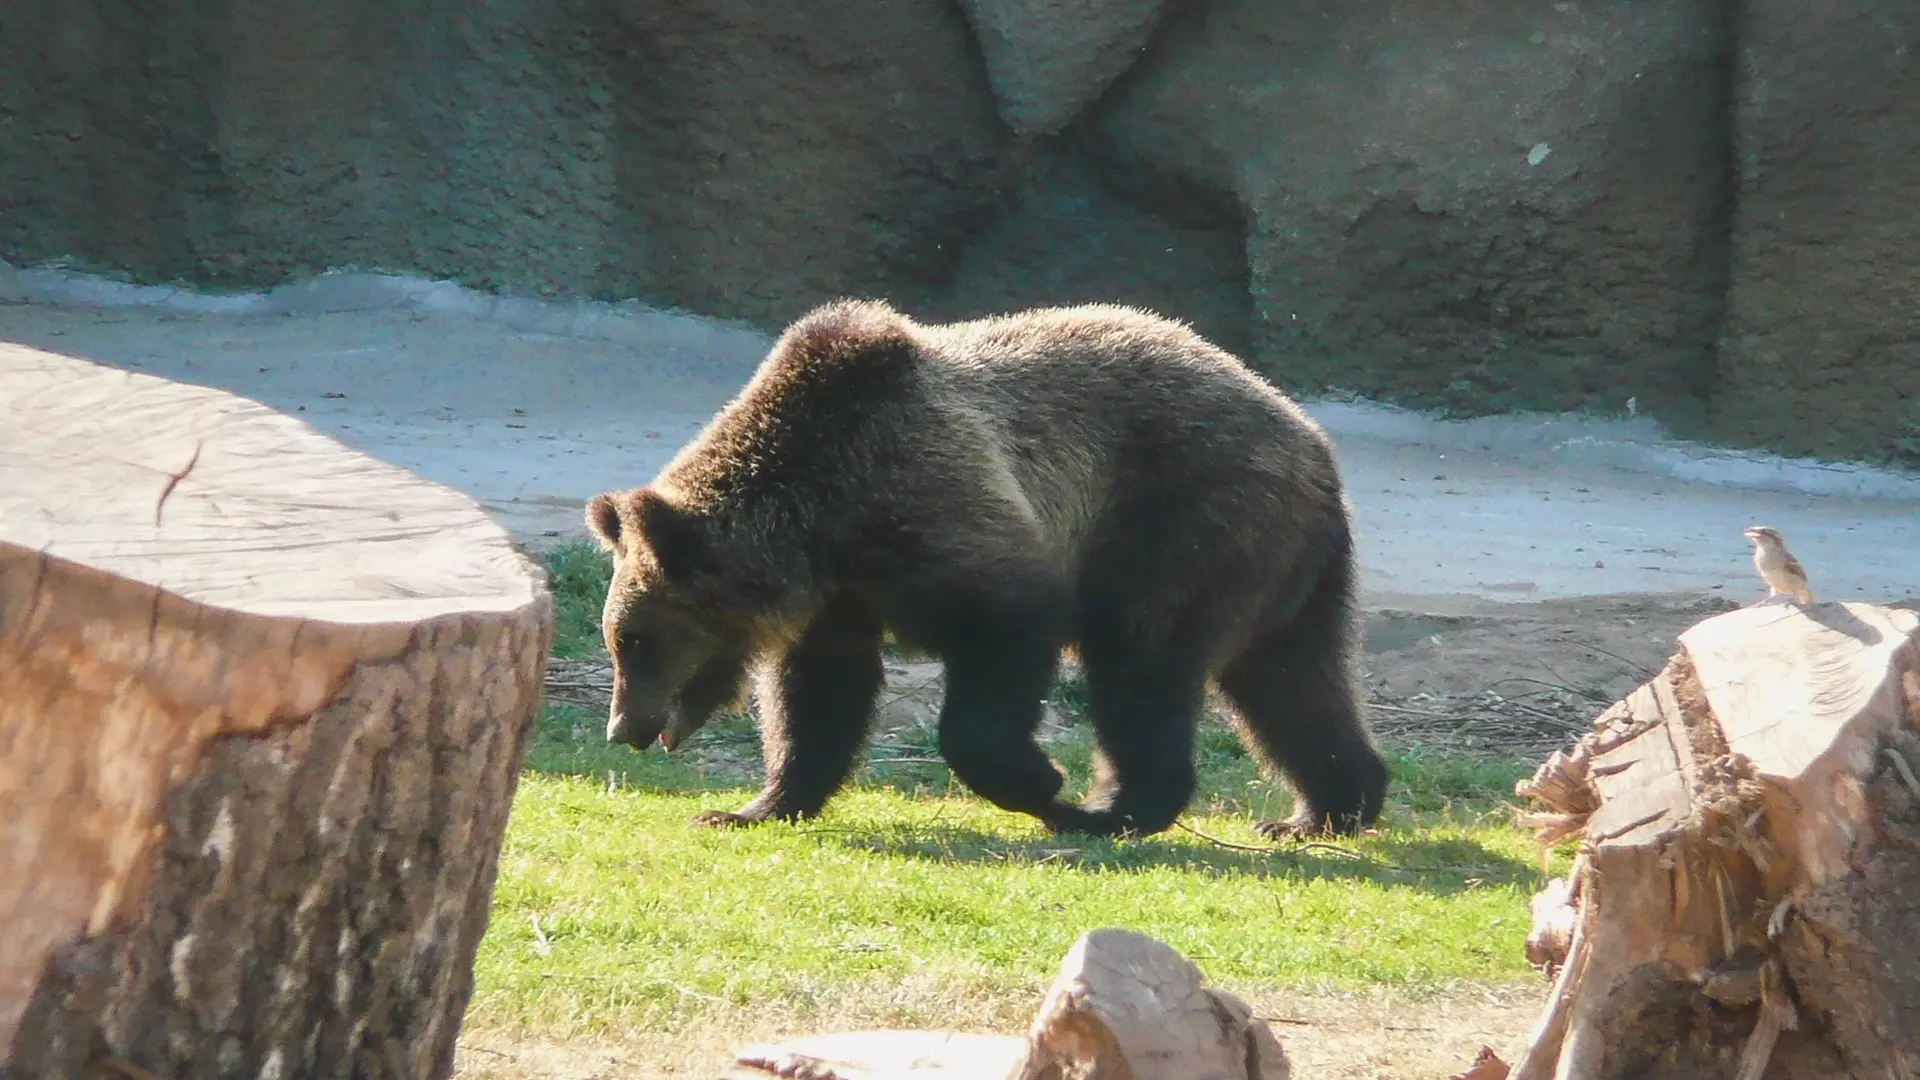 Отдых на природе стал опасным в челябинском городе из-за медведя